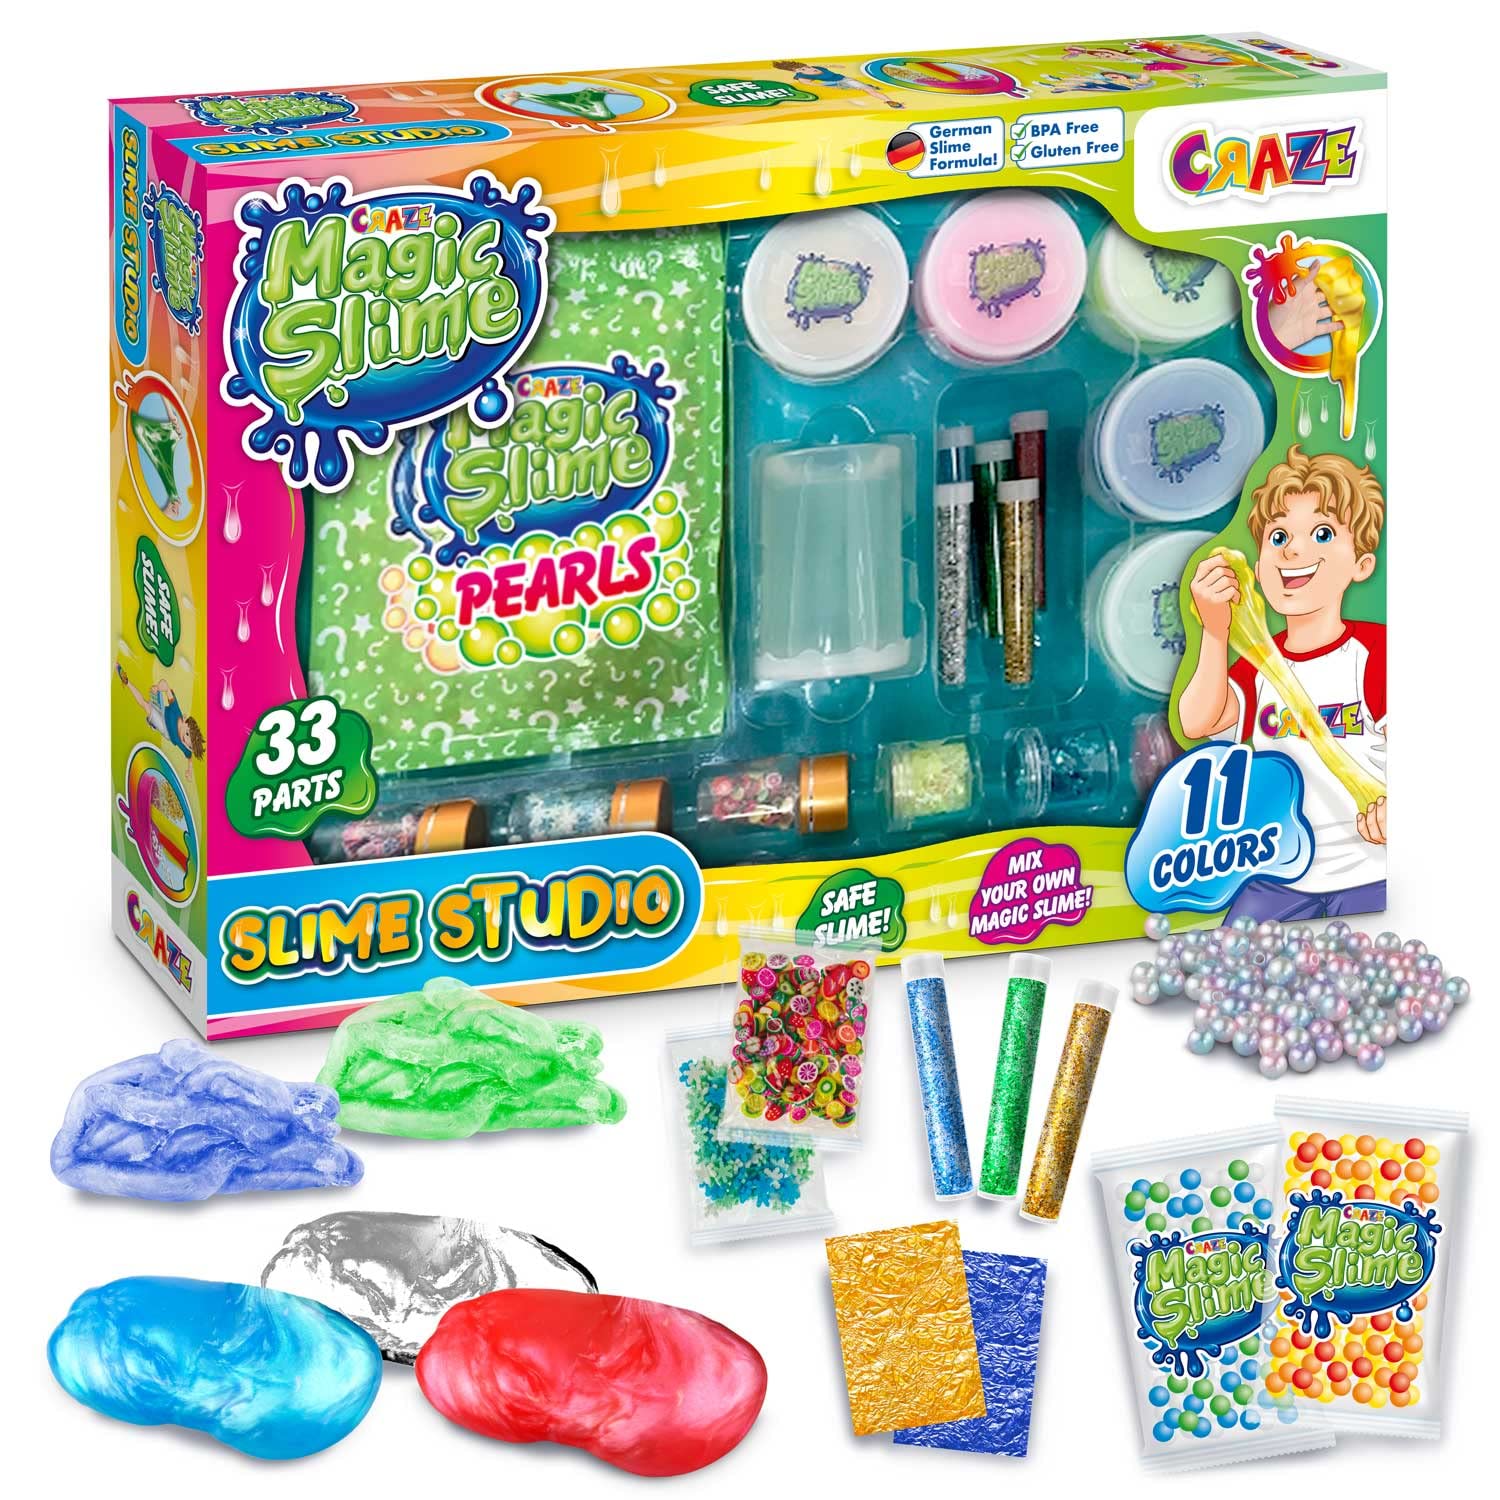 CRAZE Magic Slime Studio Schleim Selbermachen Set DIY Slime Kit 11 Farben mit Zubehör Fluffy Slime mit Perlen Glitzer & Spezialleffekte Schleim Kinder 32862, Bunt, 36.5 x 5.8 x 25.5 cm